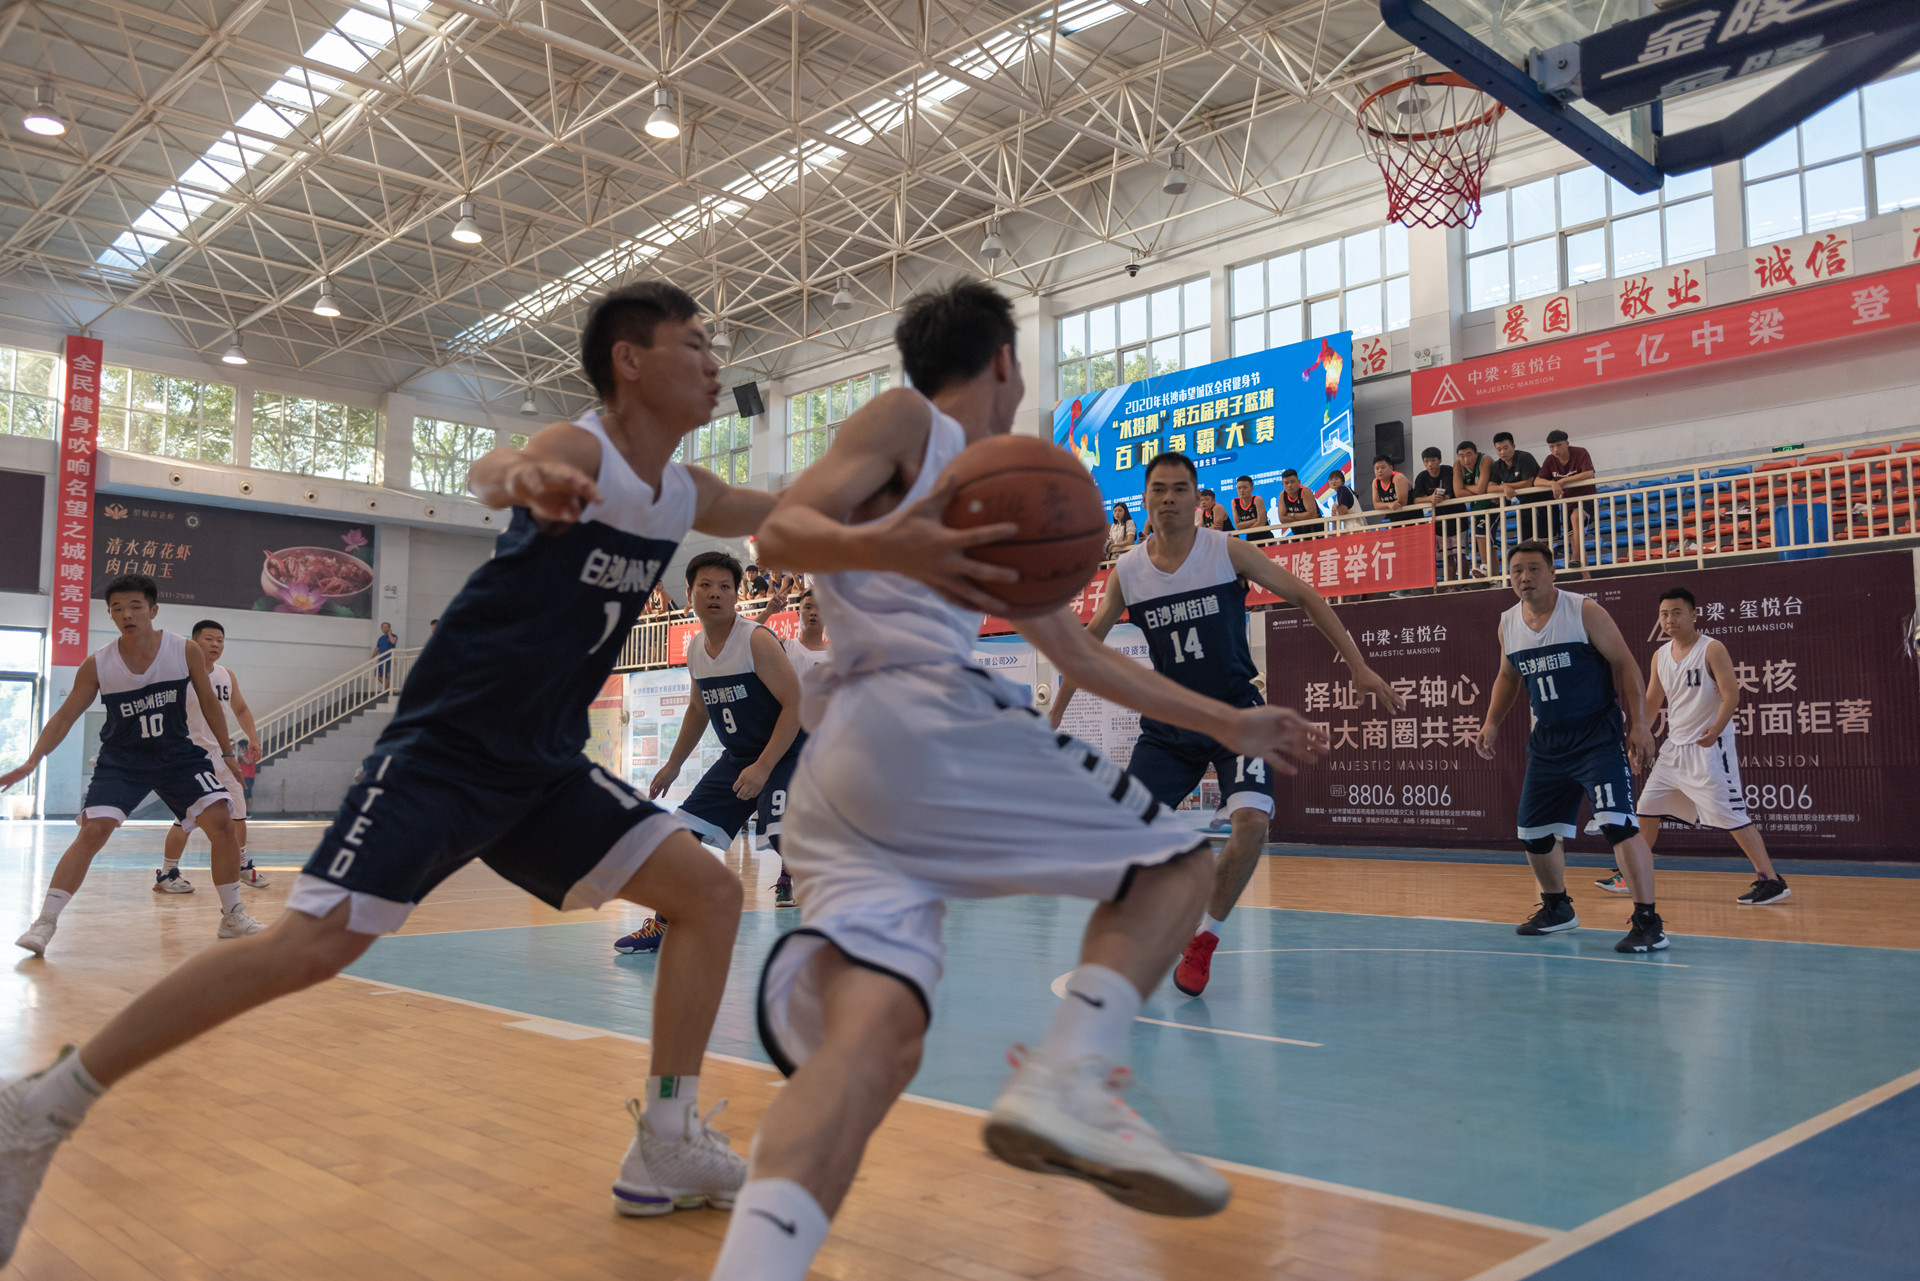 长沙望城第五届男篮百村赛总决赛开幕   “乡里人”上演篮球狂欢